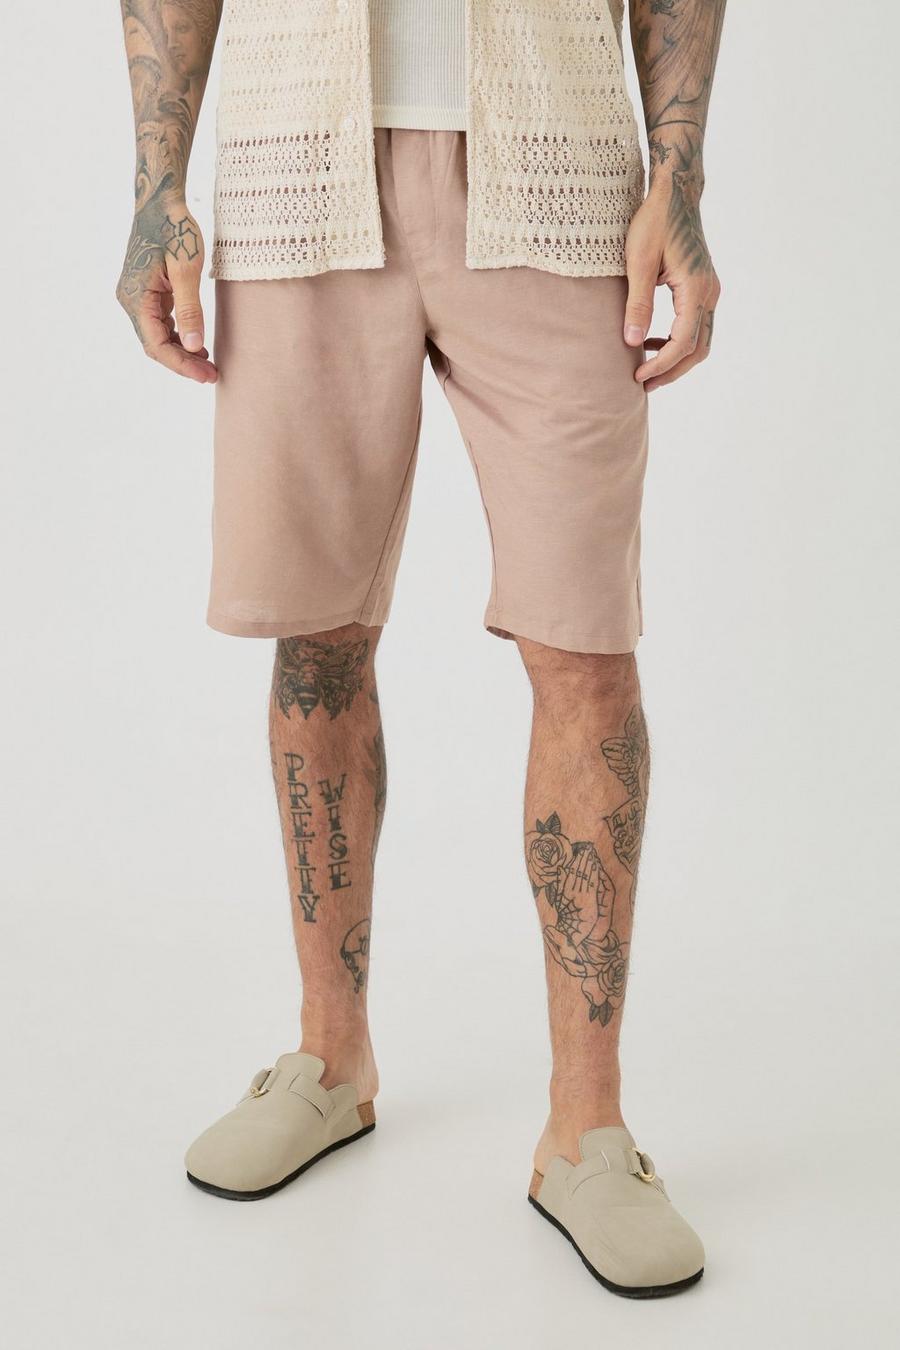 Pantalones cortos Tall cómodos de lino con cintura elástica en color topo, Taupe